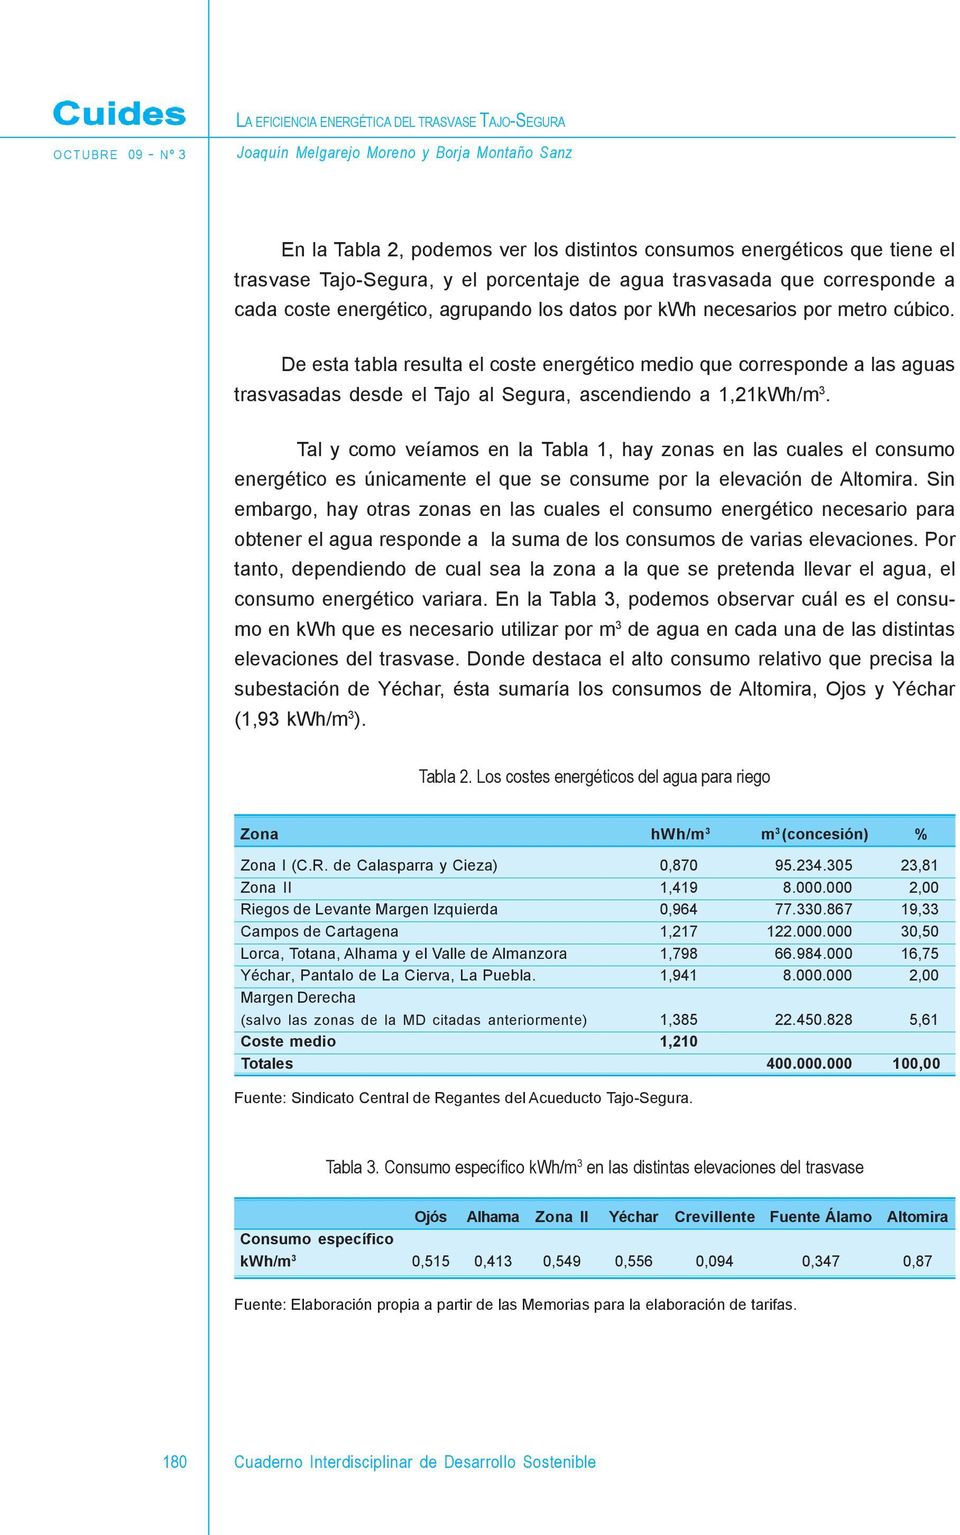 De esta tabla resulta el coste energético medio que corresponde a las aguas trasvasadas desde el Tajo al Segura, ascendiendo a 1,21kWh/m 3.